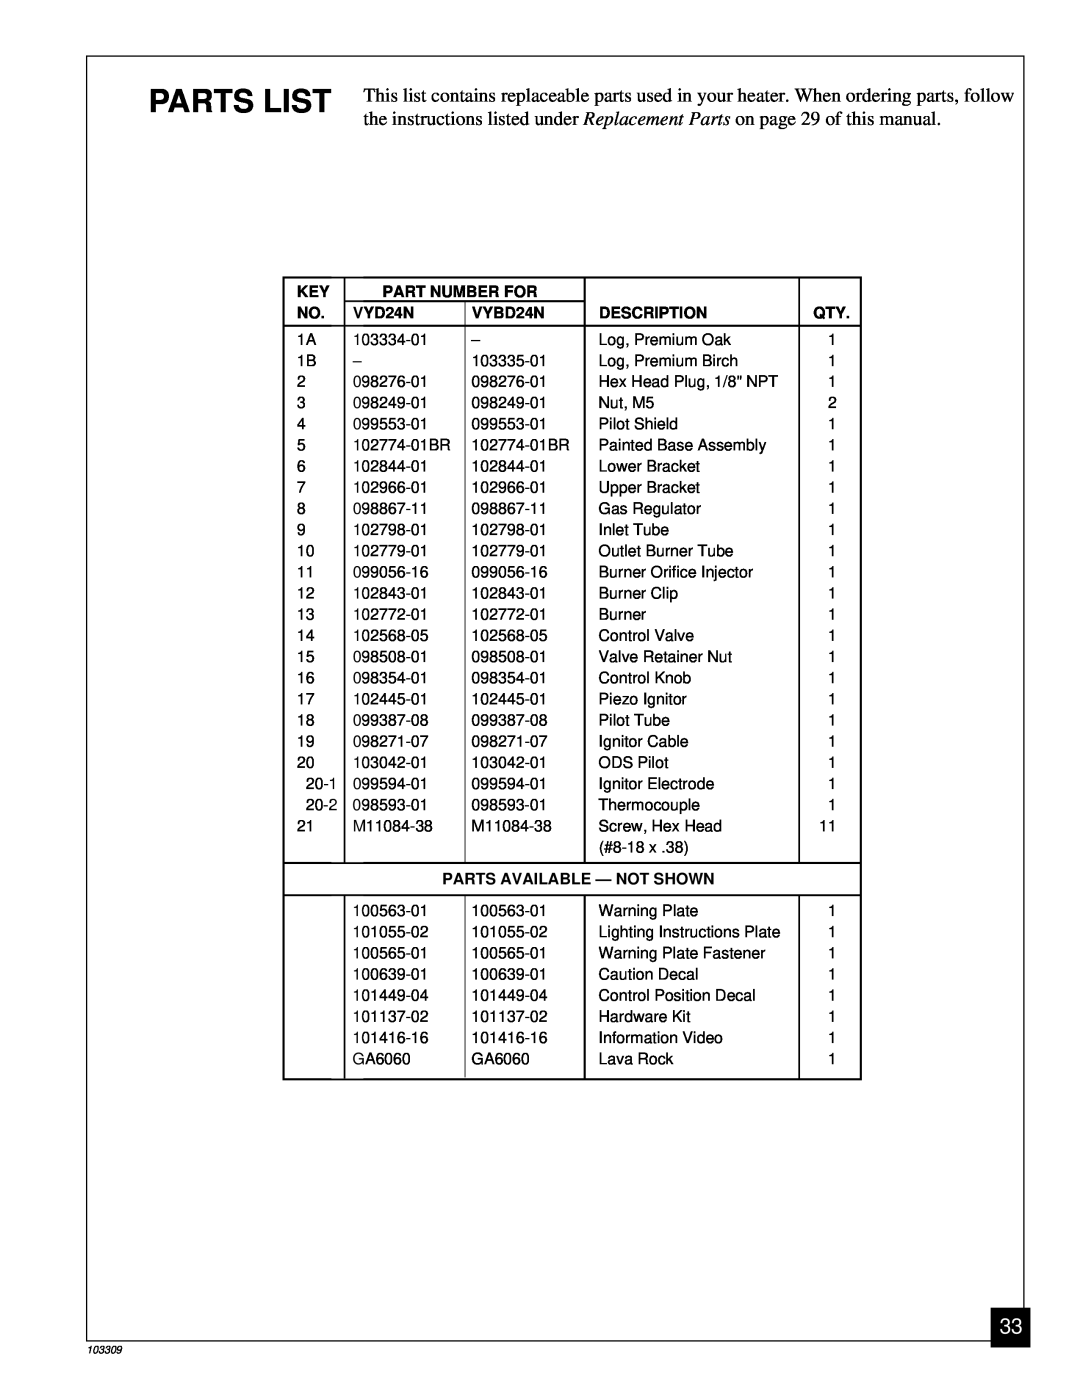 Desa UNVENTED (VENT-FREE) NATURAL GAS LOG HEATER Parts List, Part Number For, VYD24N, VYBD24N, Description 